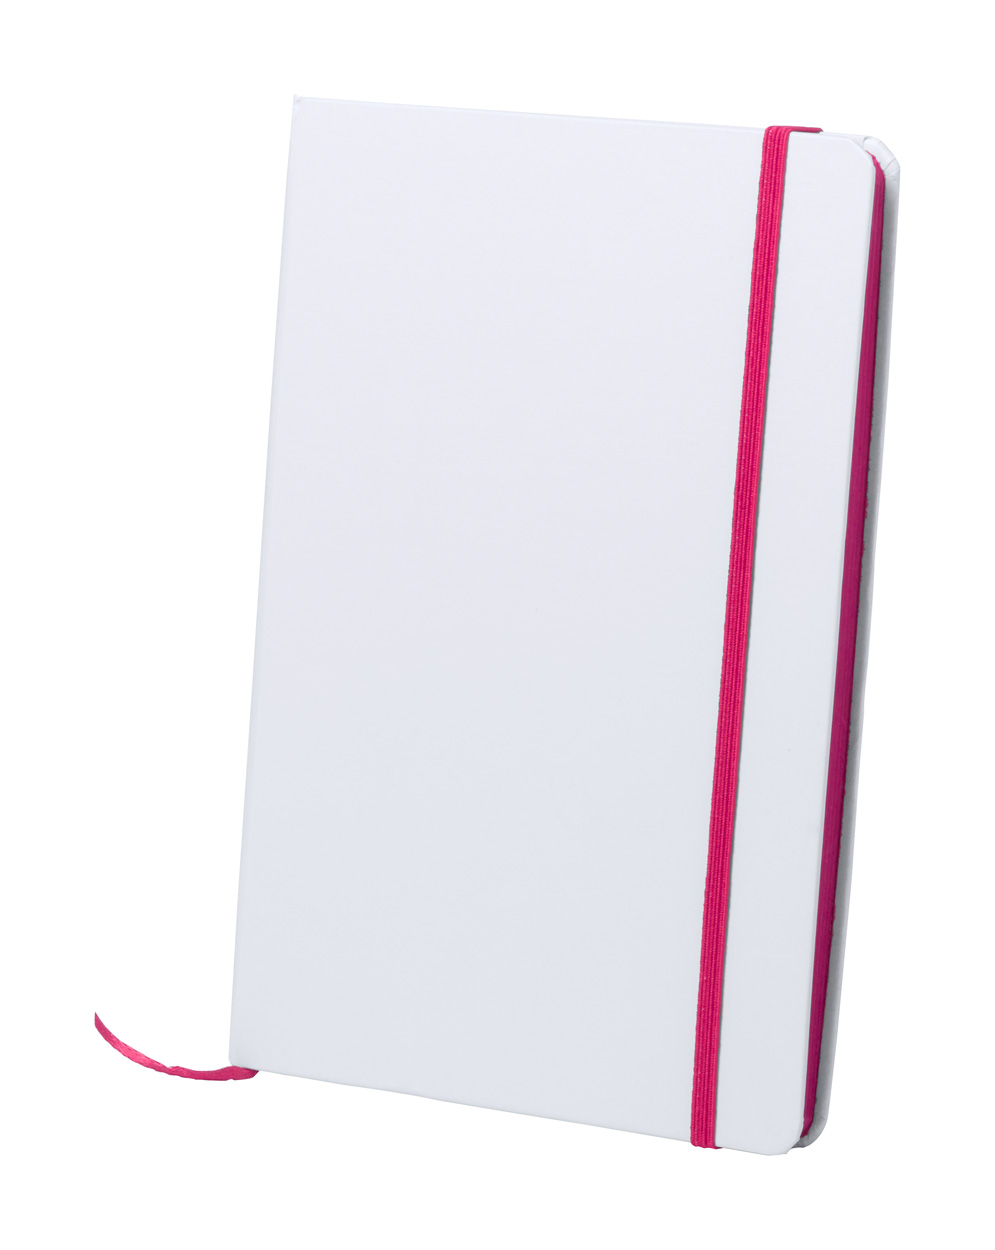 Kaffol notebook s tiskom 